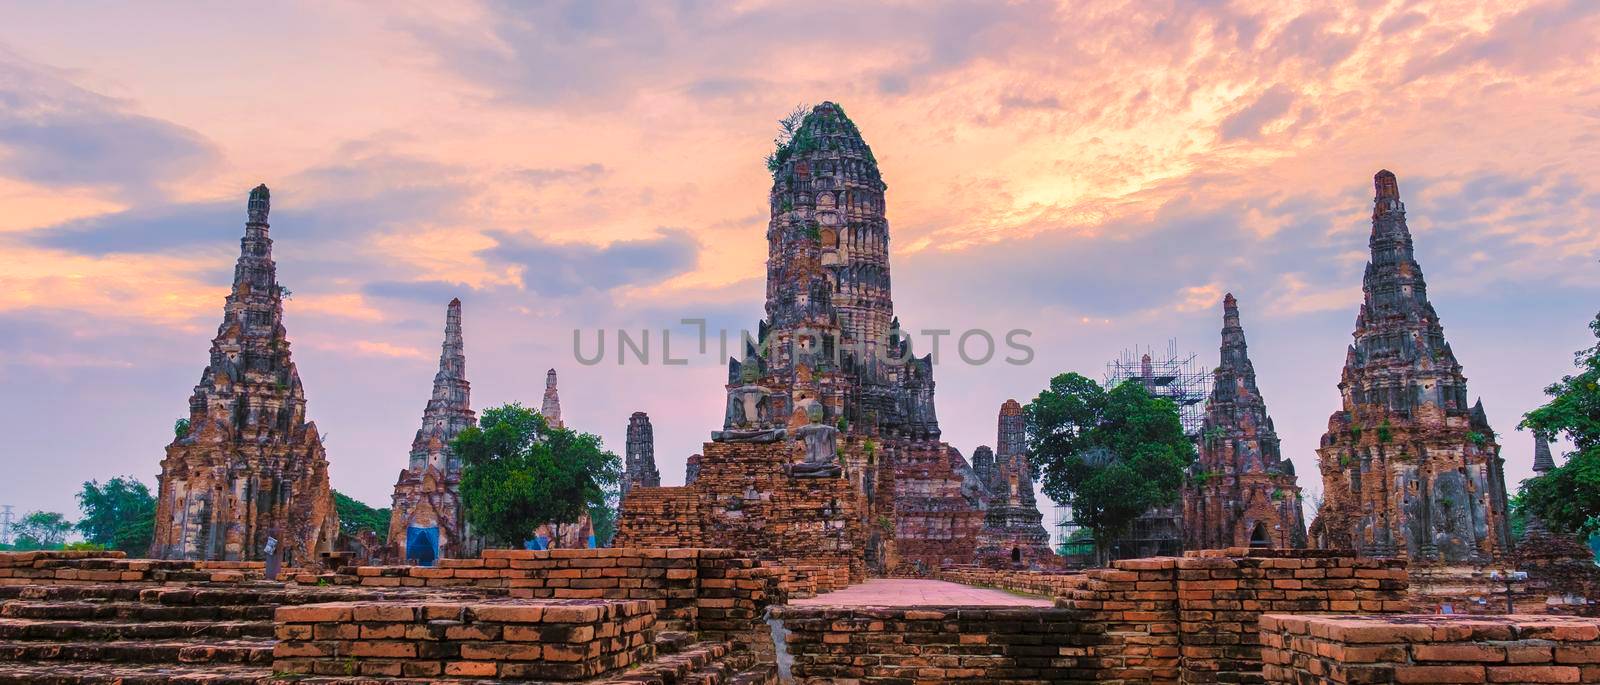 Ayutthaya, Thailand at Wat Chaiwatthanaram during sunset in Ayutthaya Thailand